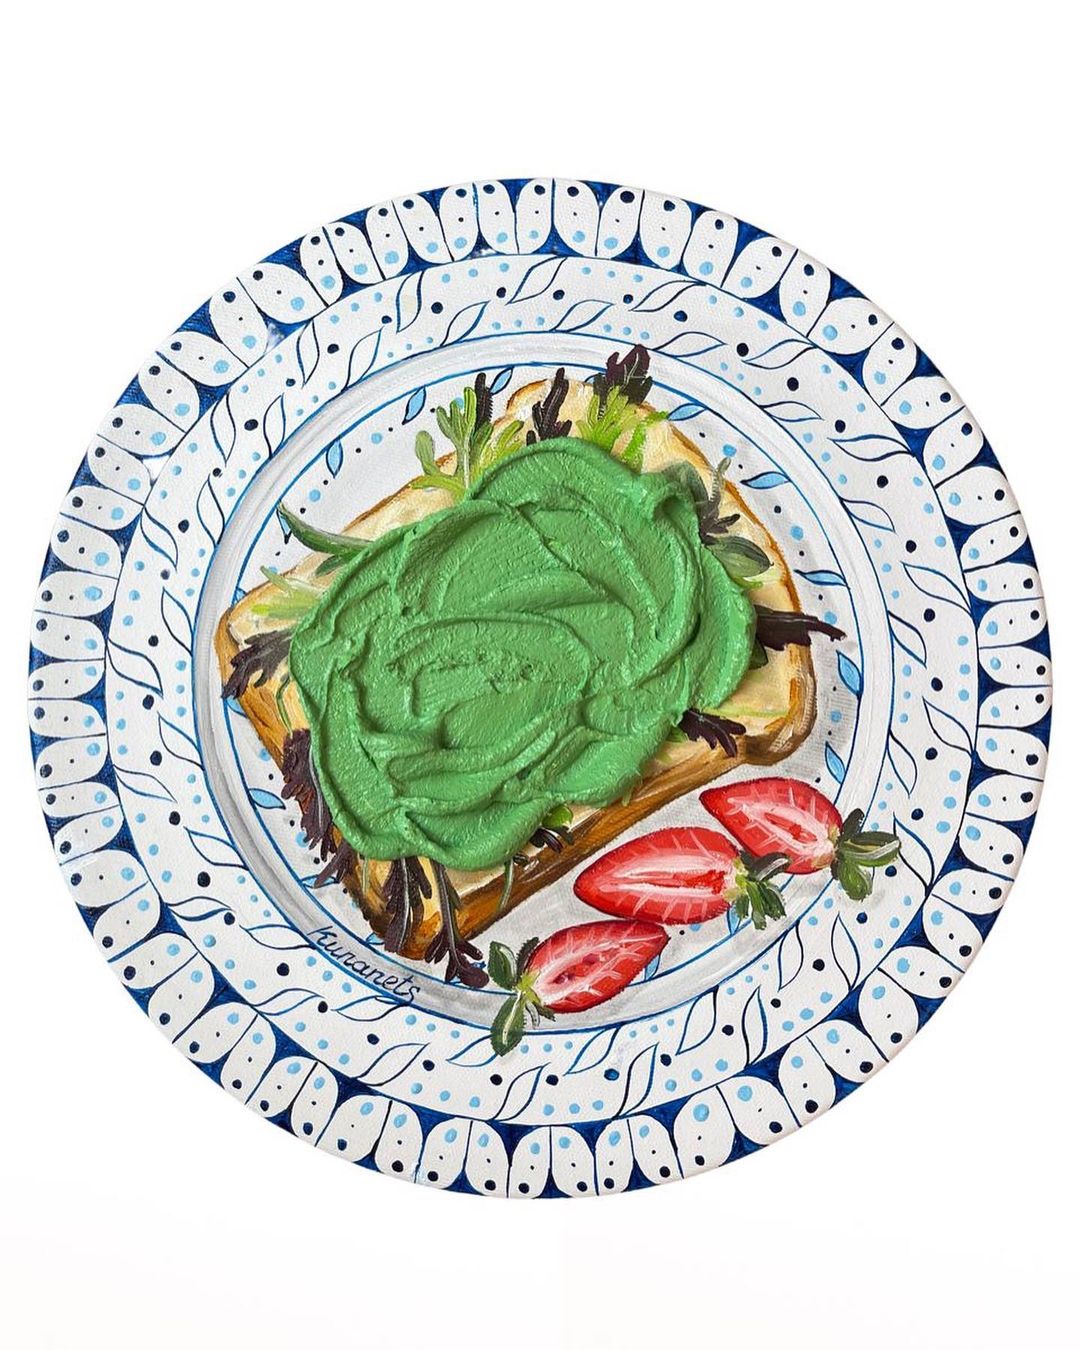 Картины с едой на винтажных тарелках от Кристины Кунанец